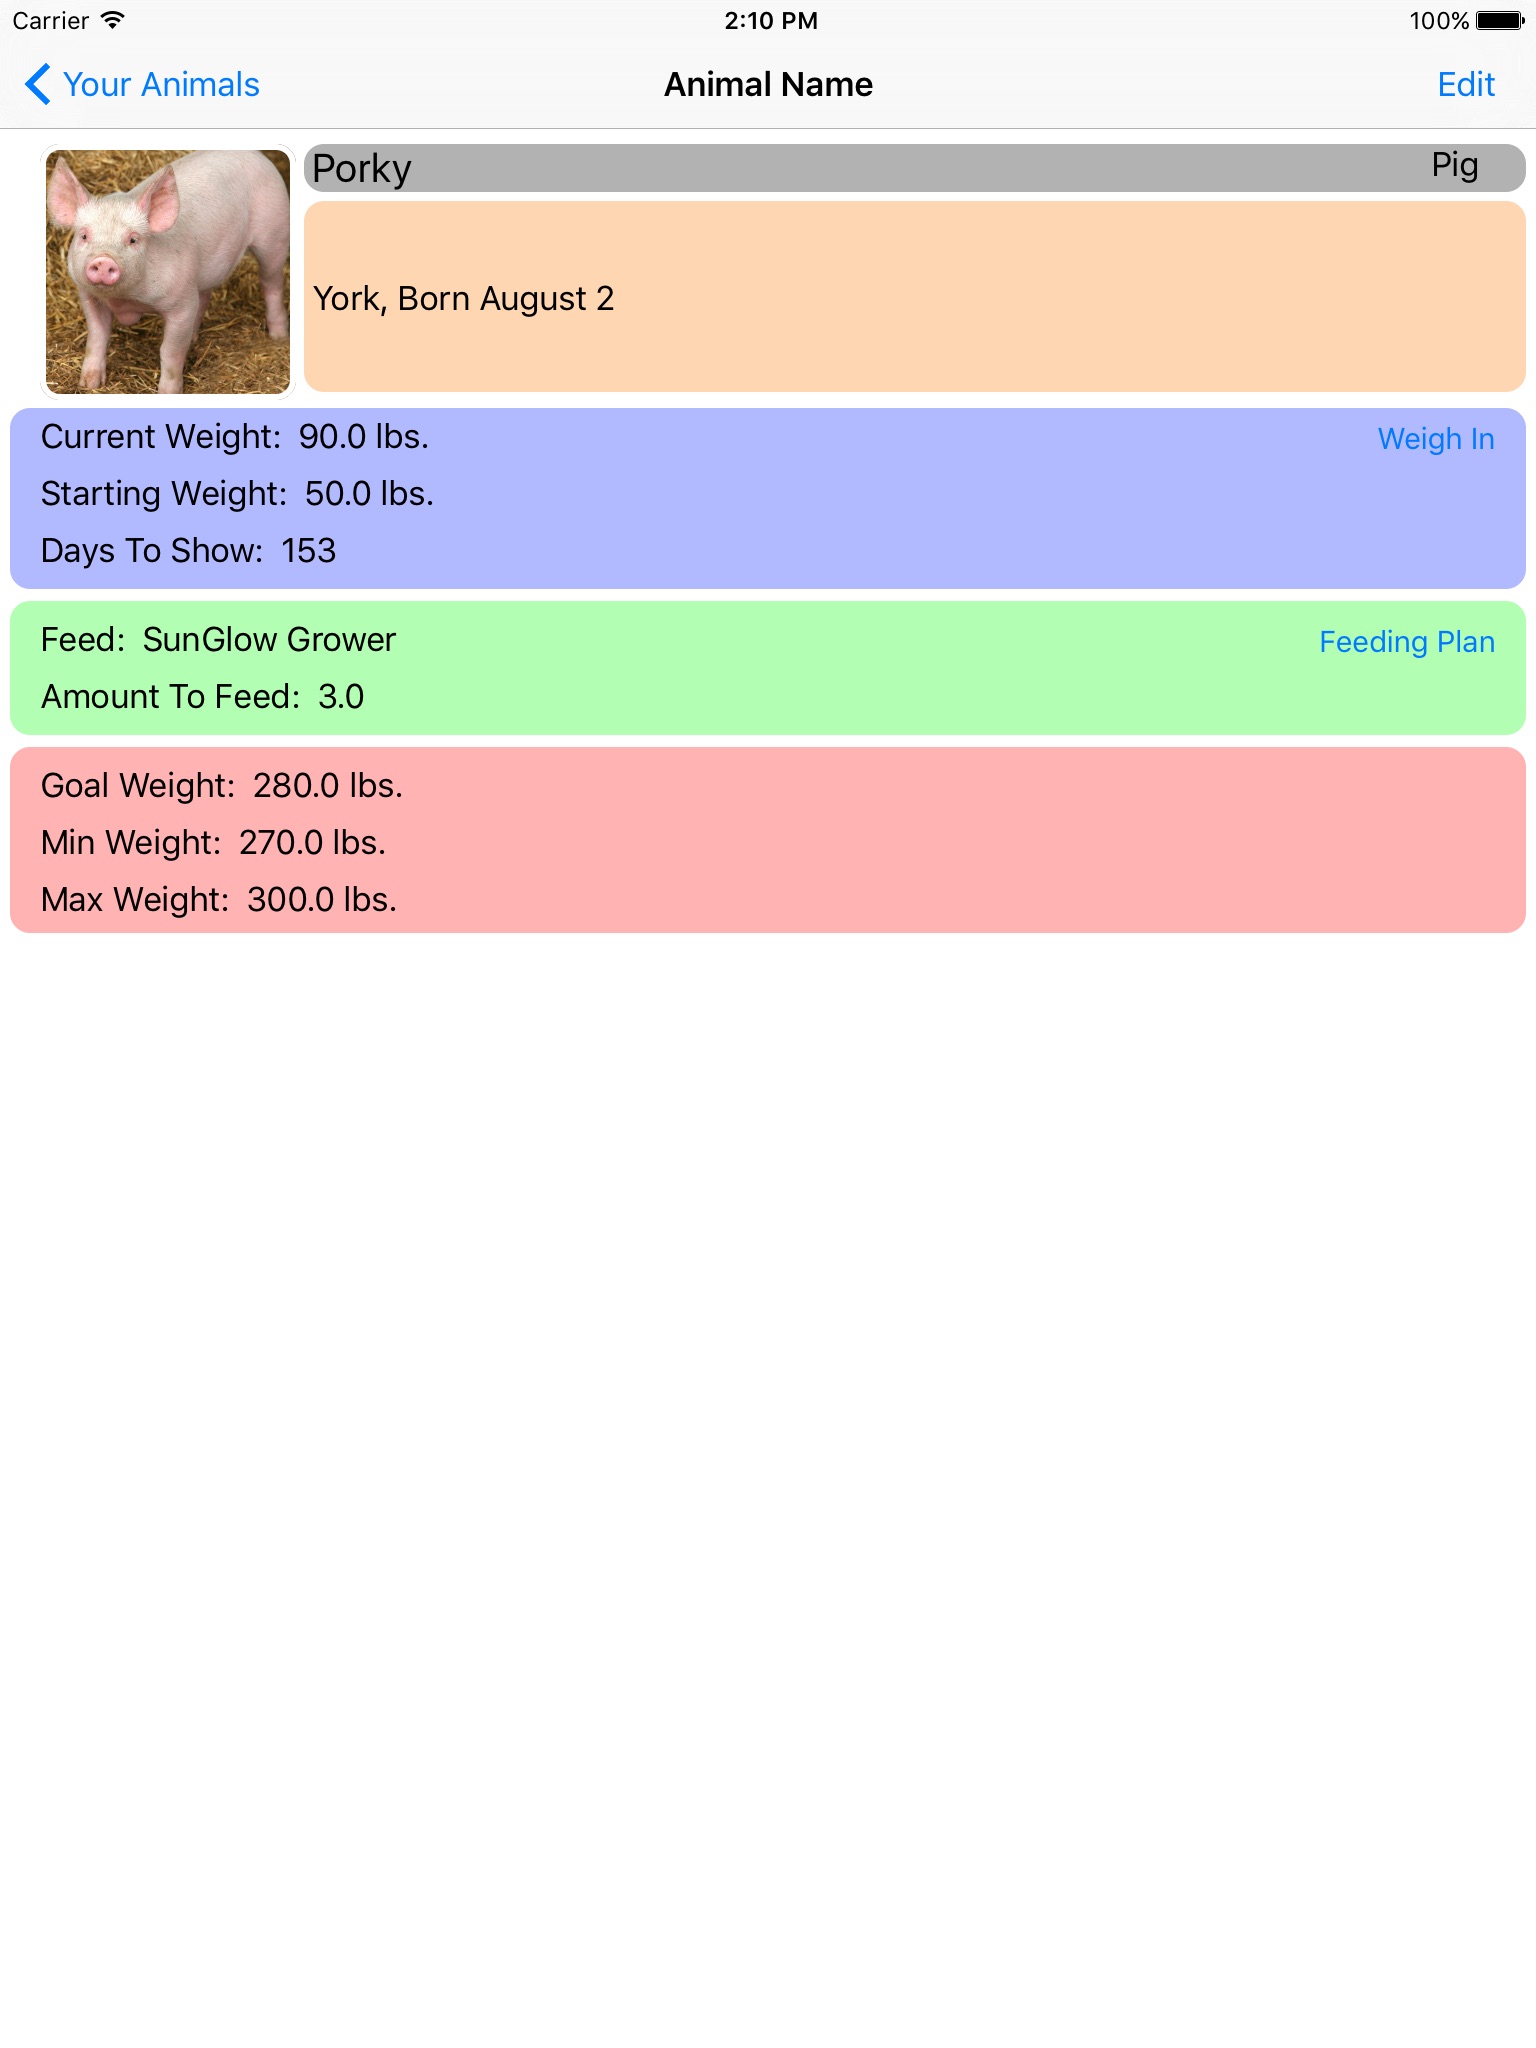 Livestock Record - Show Tracker for Livestock Show screenshot 2